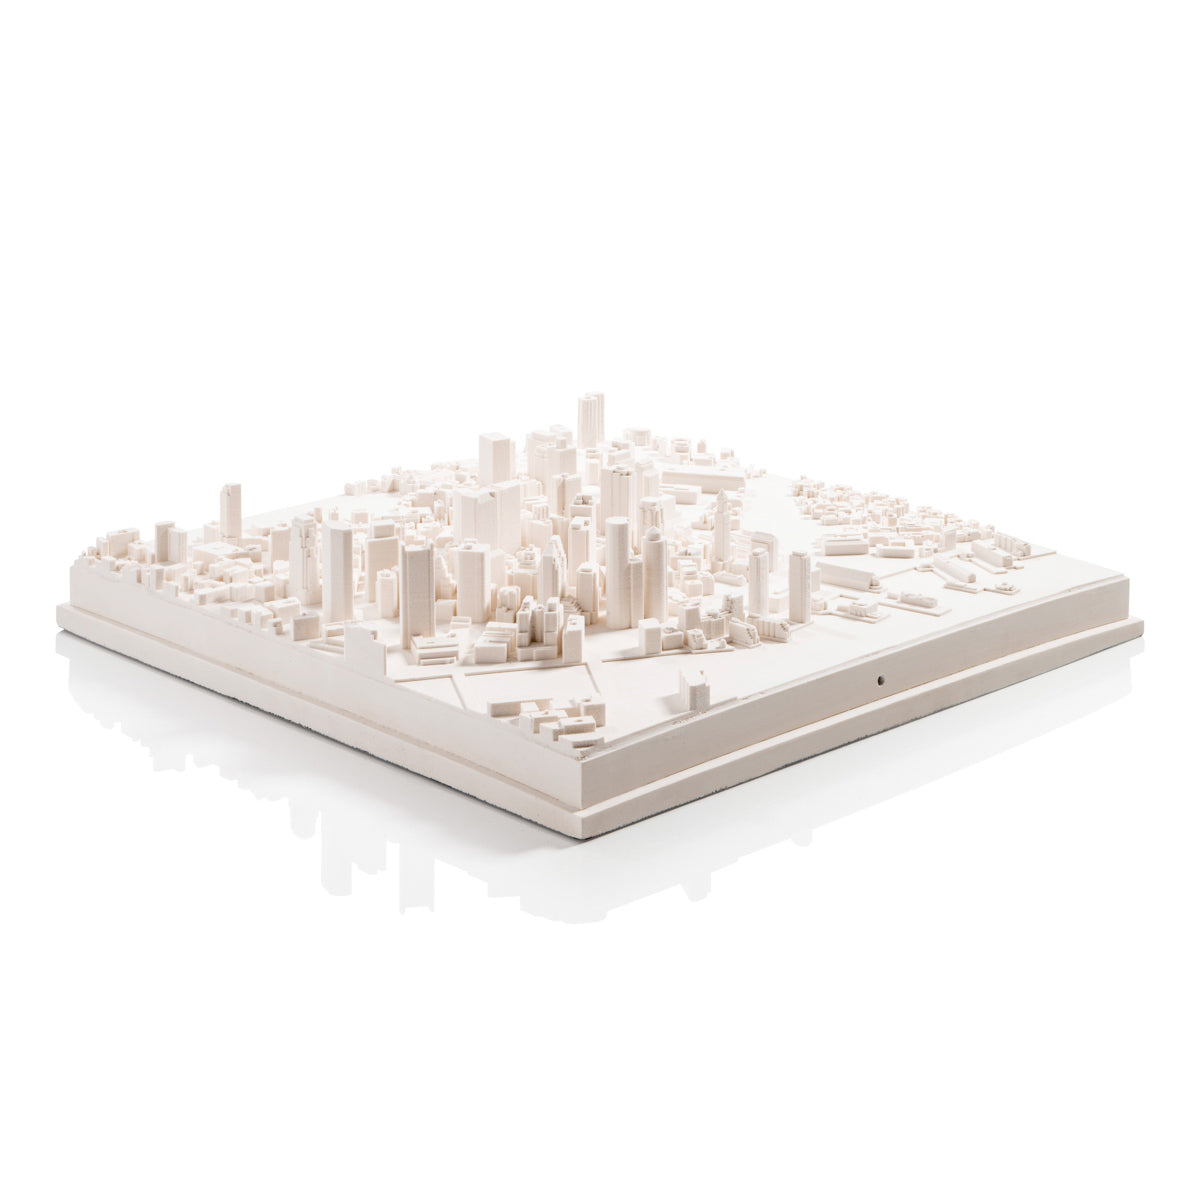 Boston Cityscape Architectural Model